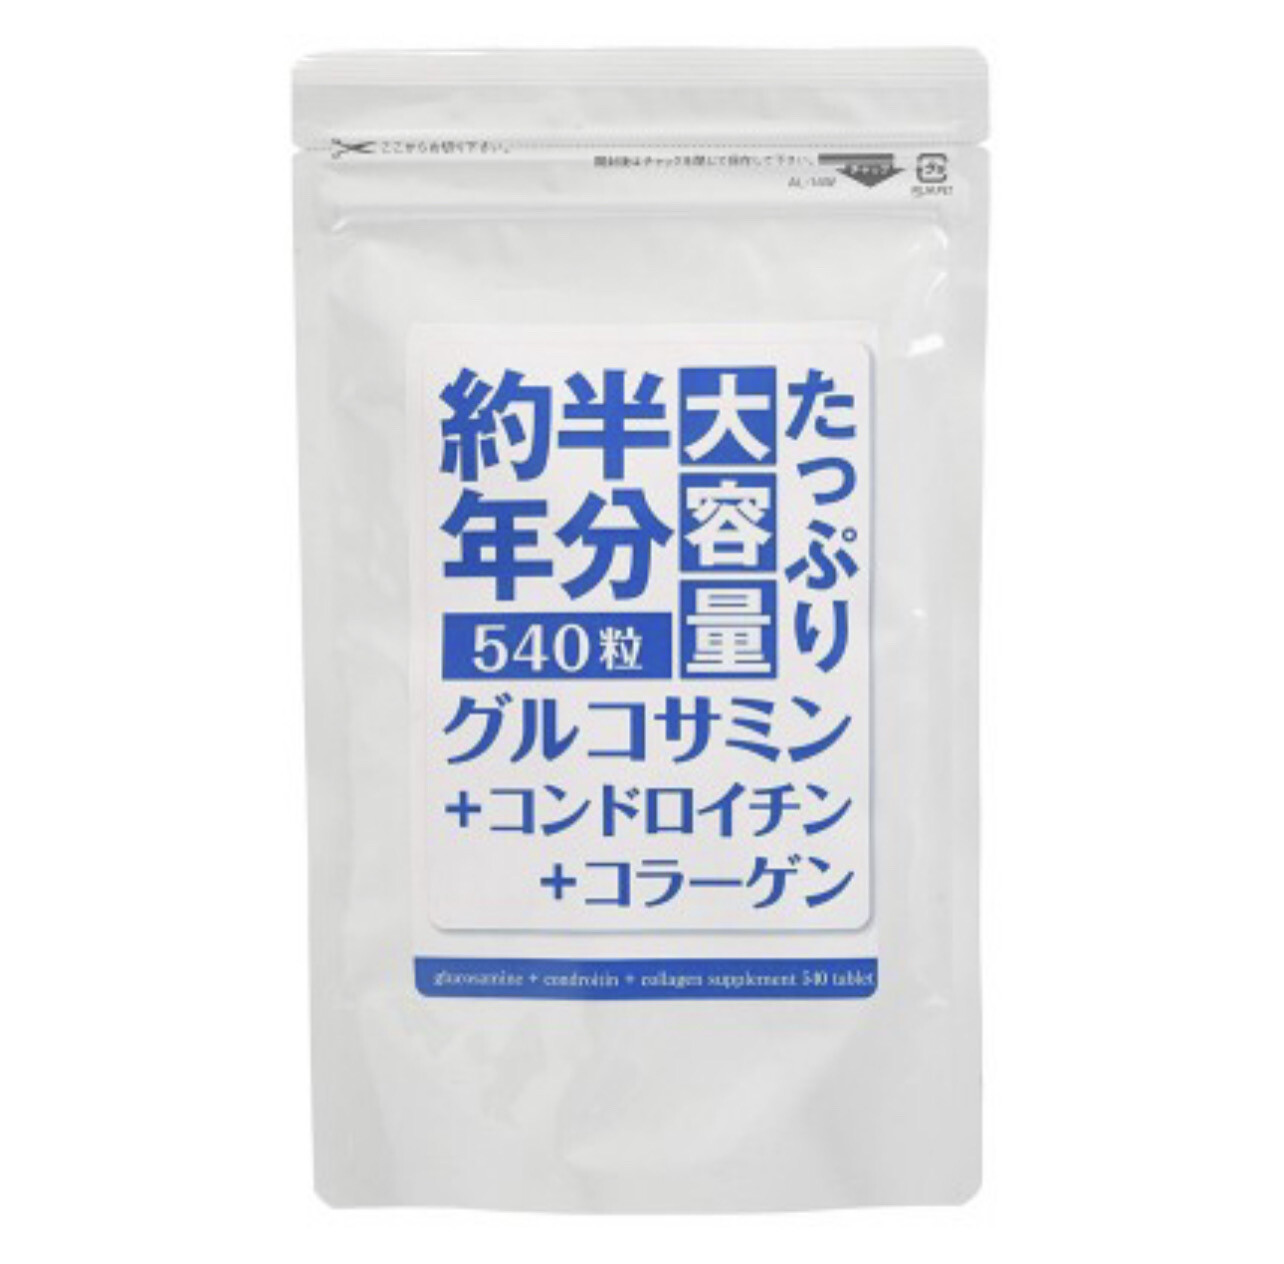 Комплекс -глюкозамин, хондроитин, коллаген для поддержания здоровья суставов на 6 мес. Northen Japan Science Co.Ltd.